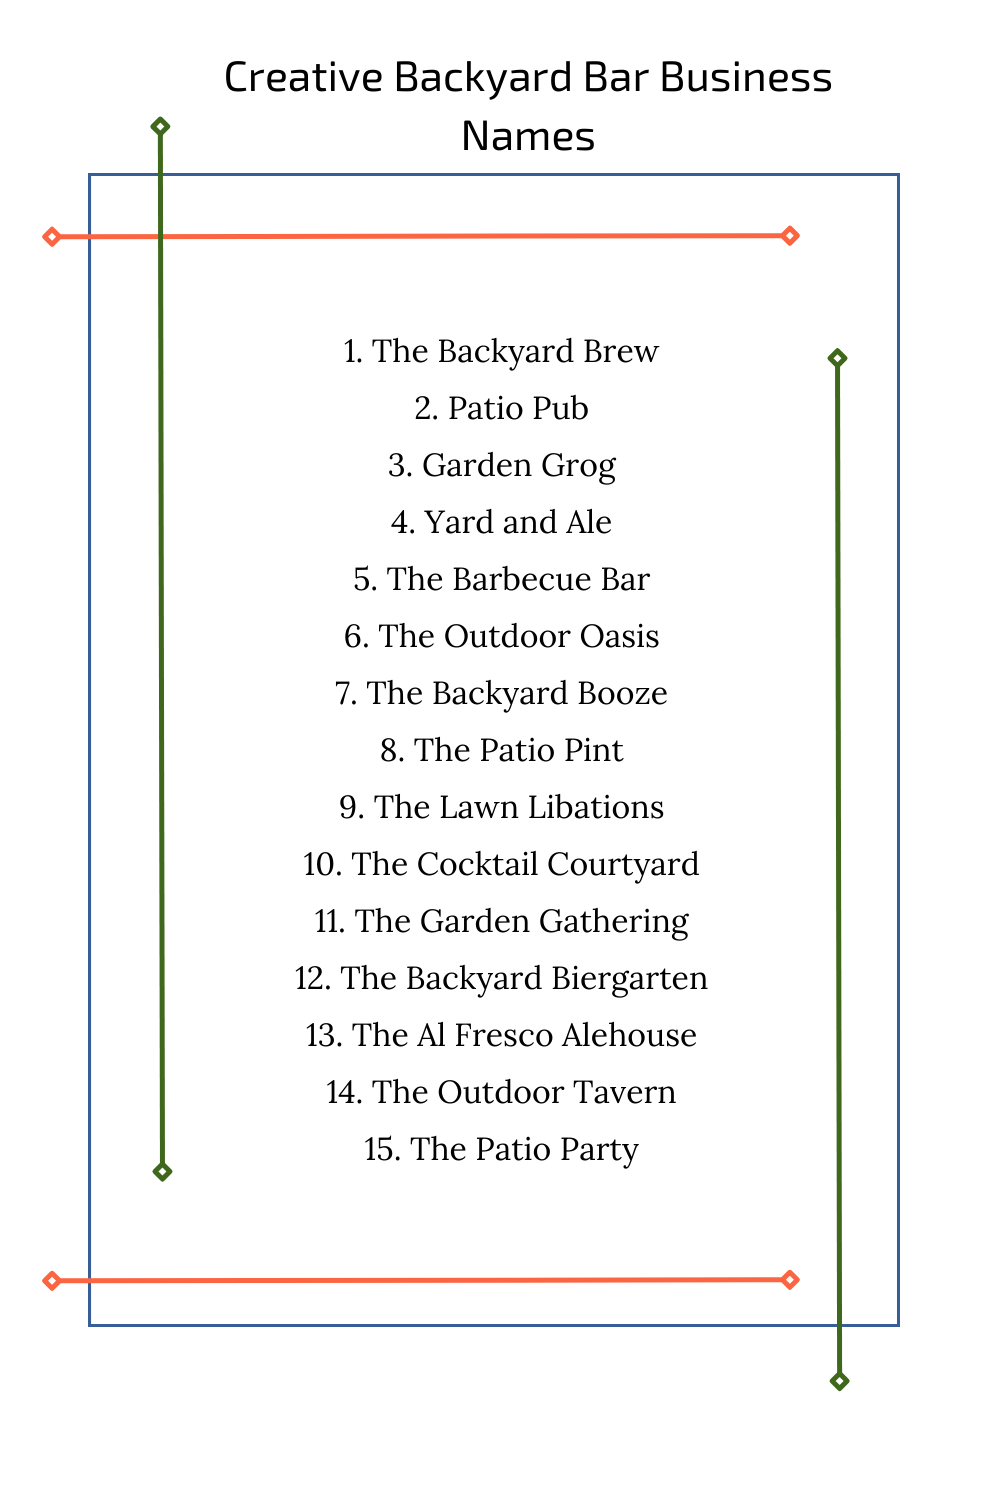 Creative Backyard Bar Business Names